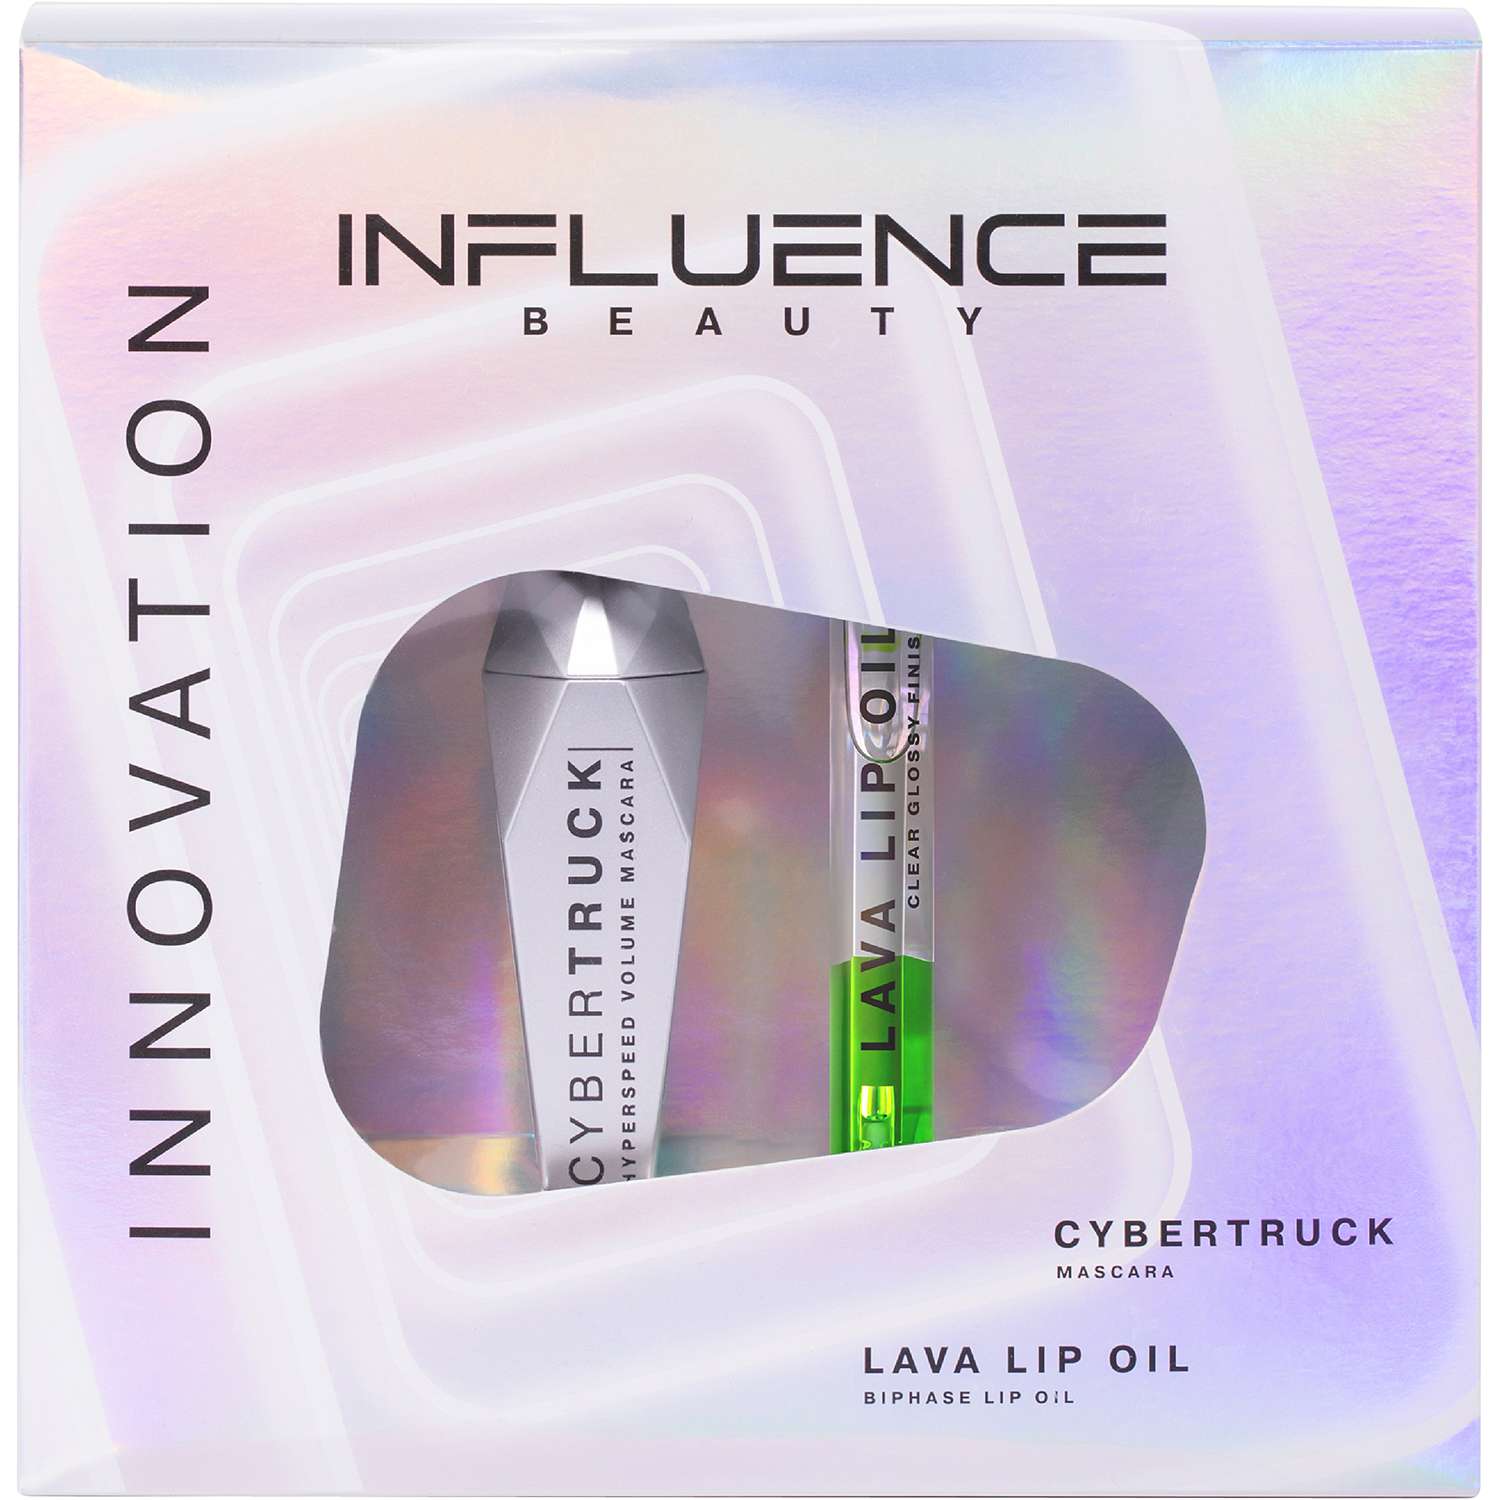 Подарочный набор Influence Beauty Тушь Cybertruck и двухфазное масло для губ Lava lip oil тон 4 - фото 1